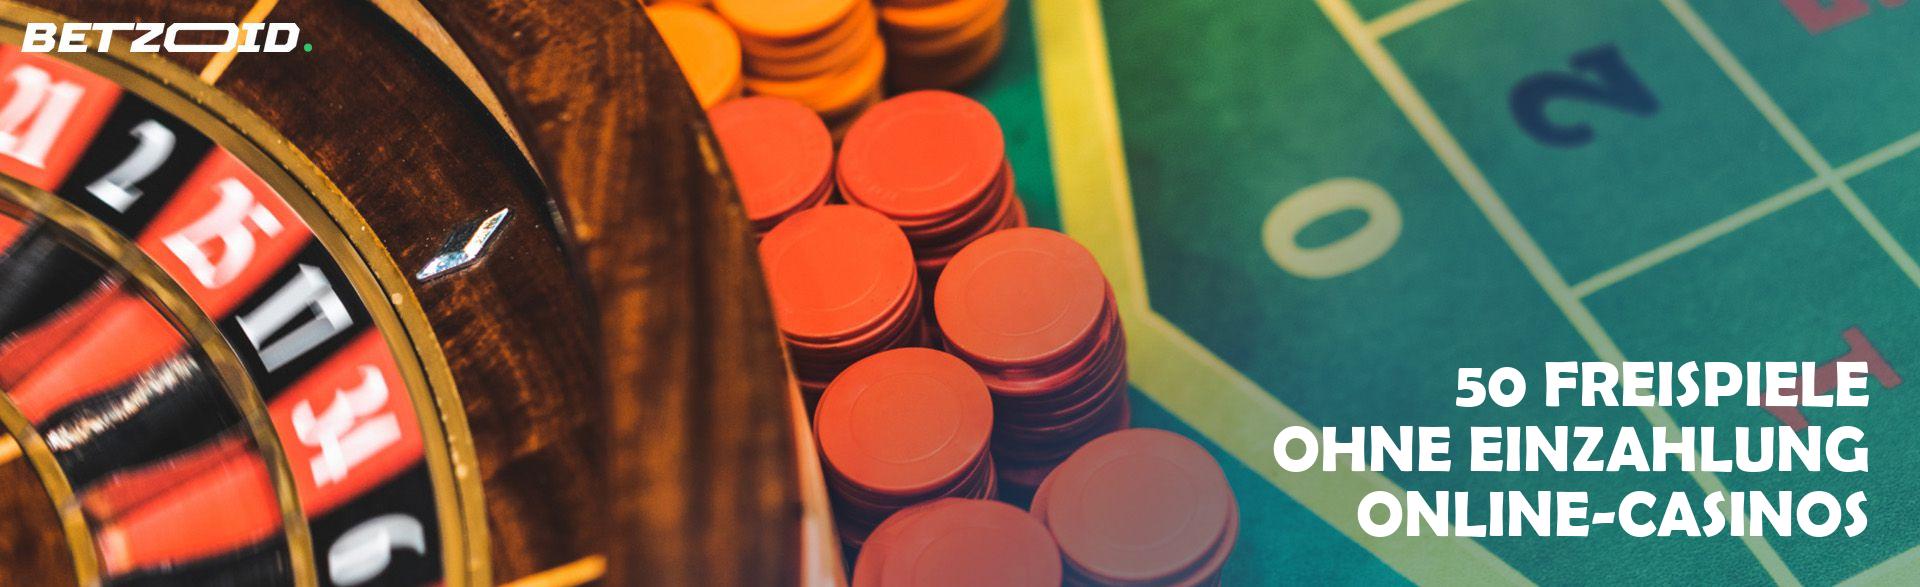 50 Freispiele ohne Einzahlung Online-Casinos.